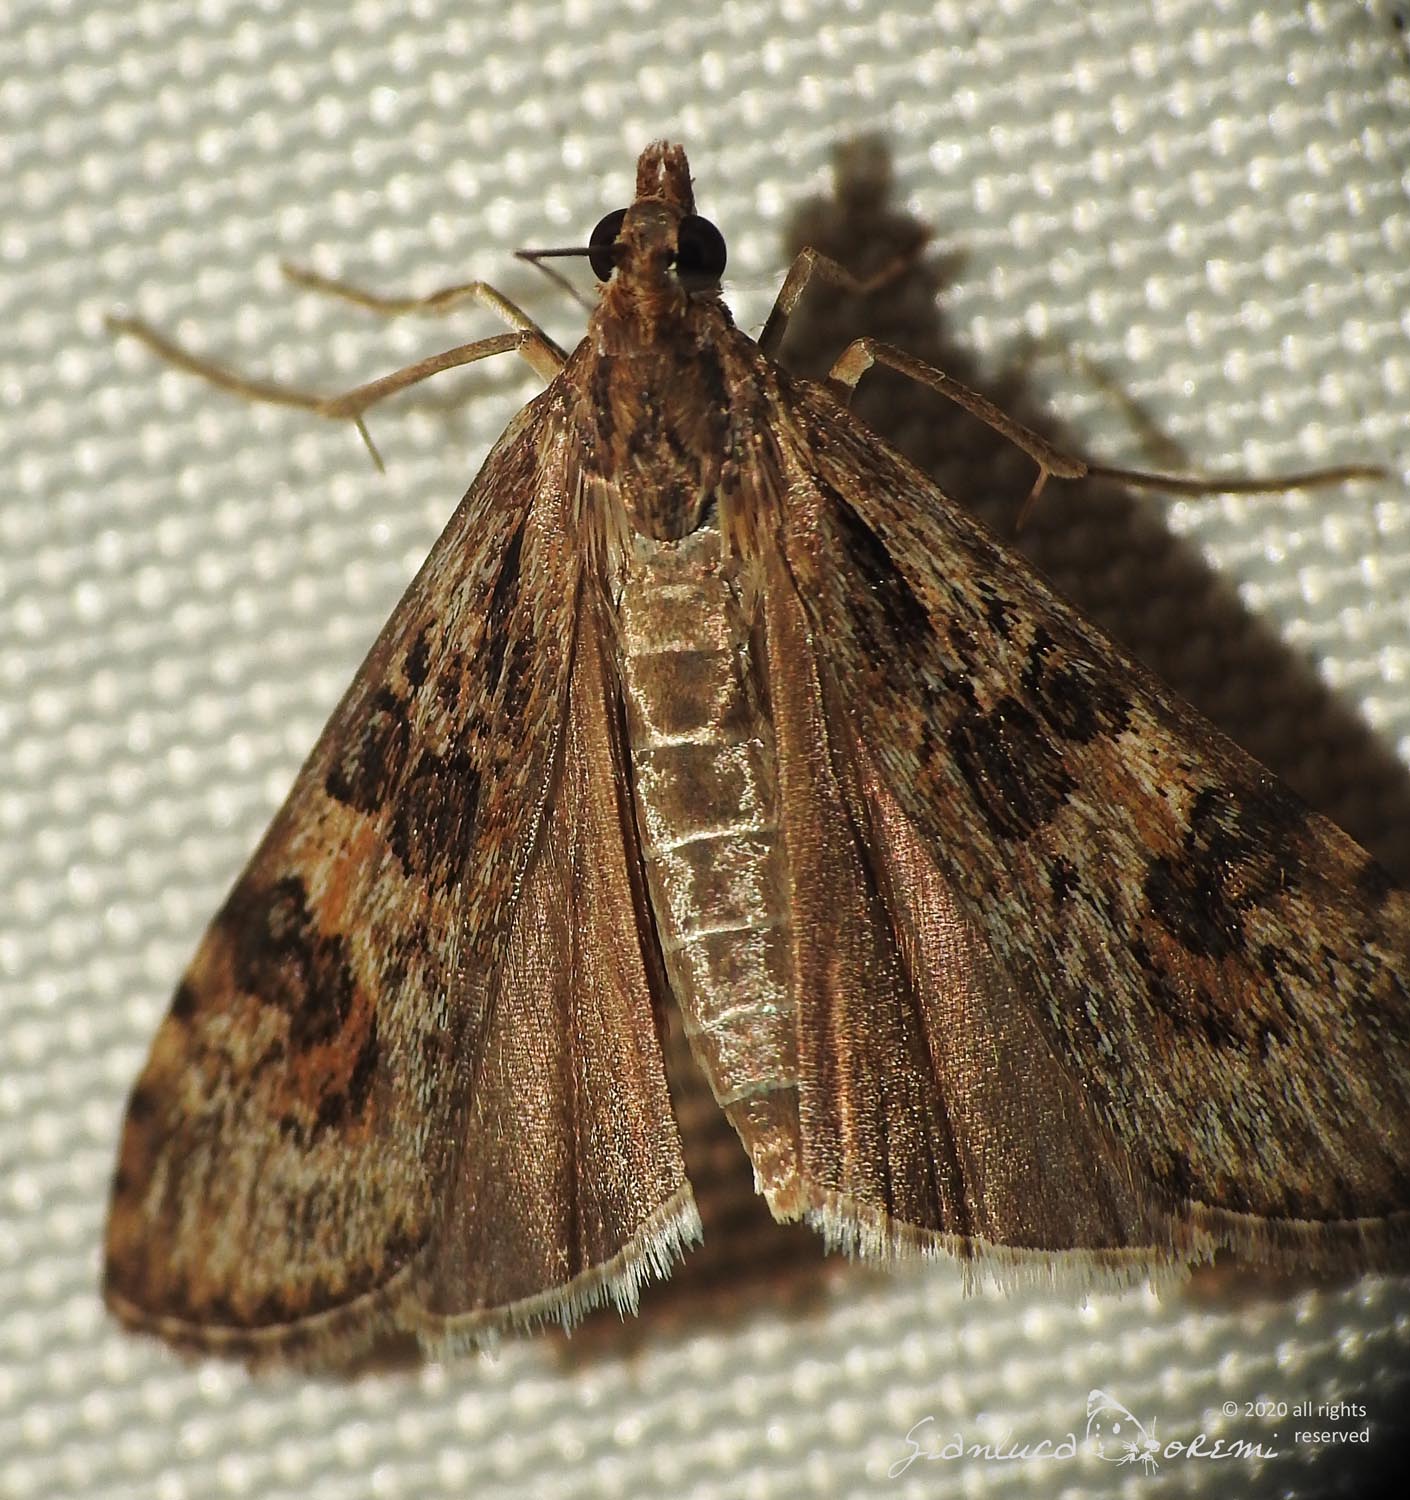 Nomophila noctuella